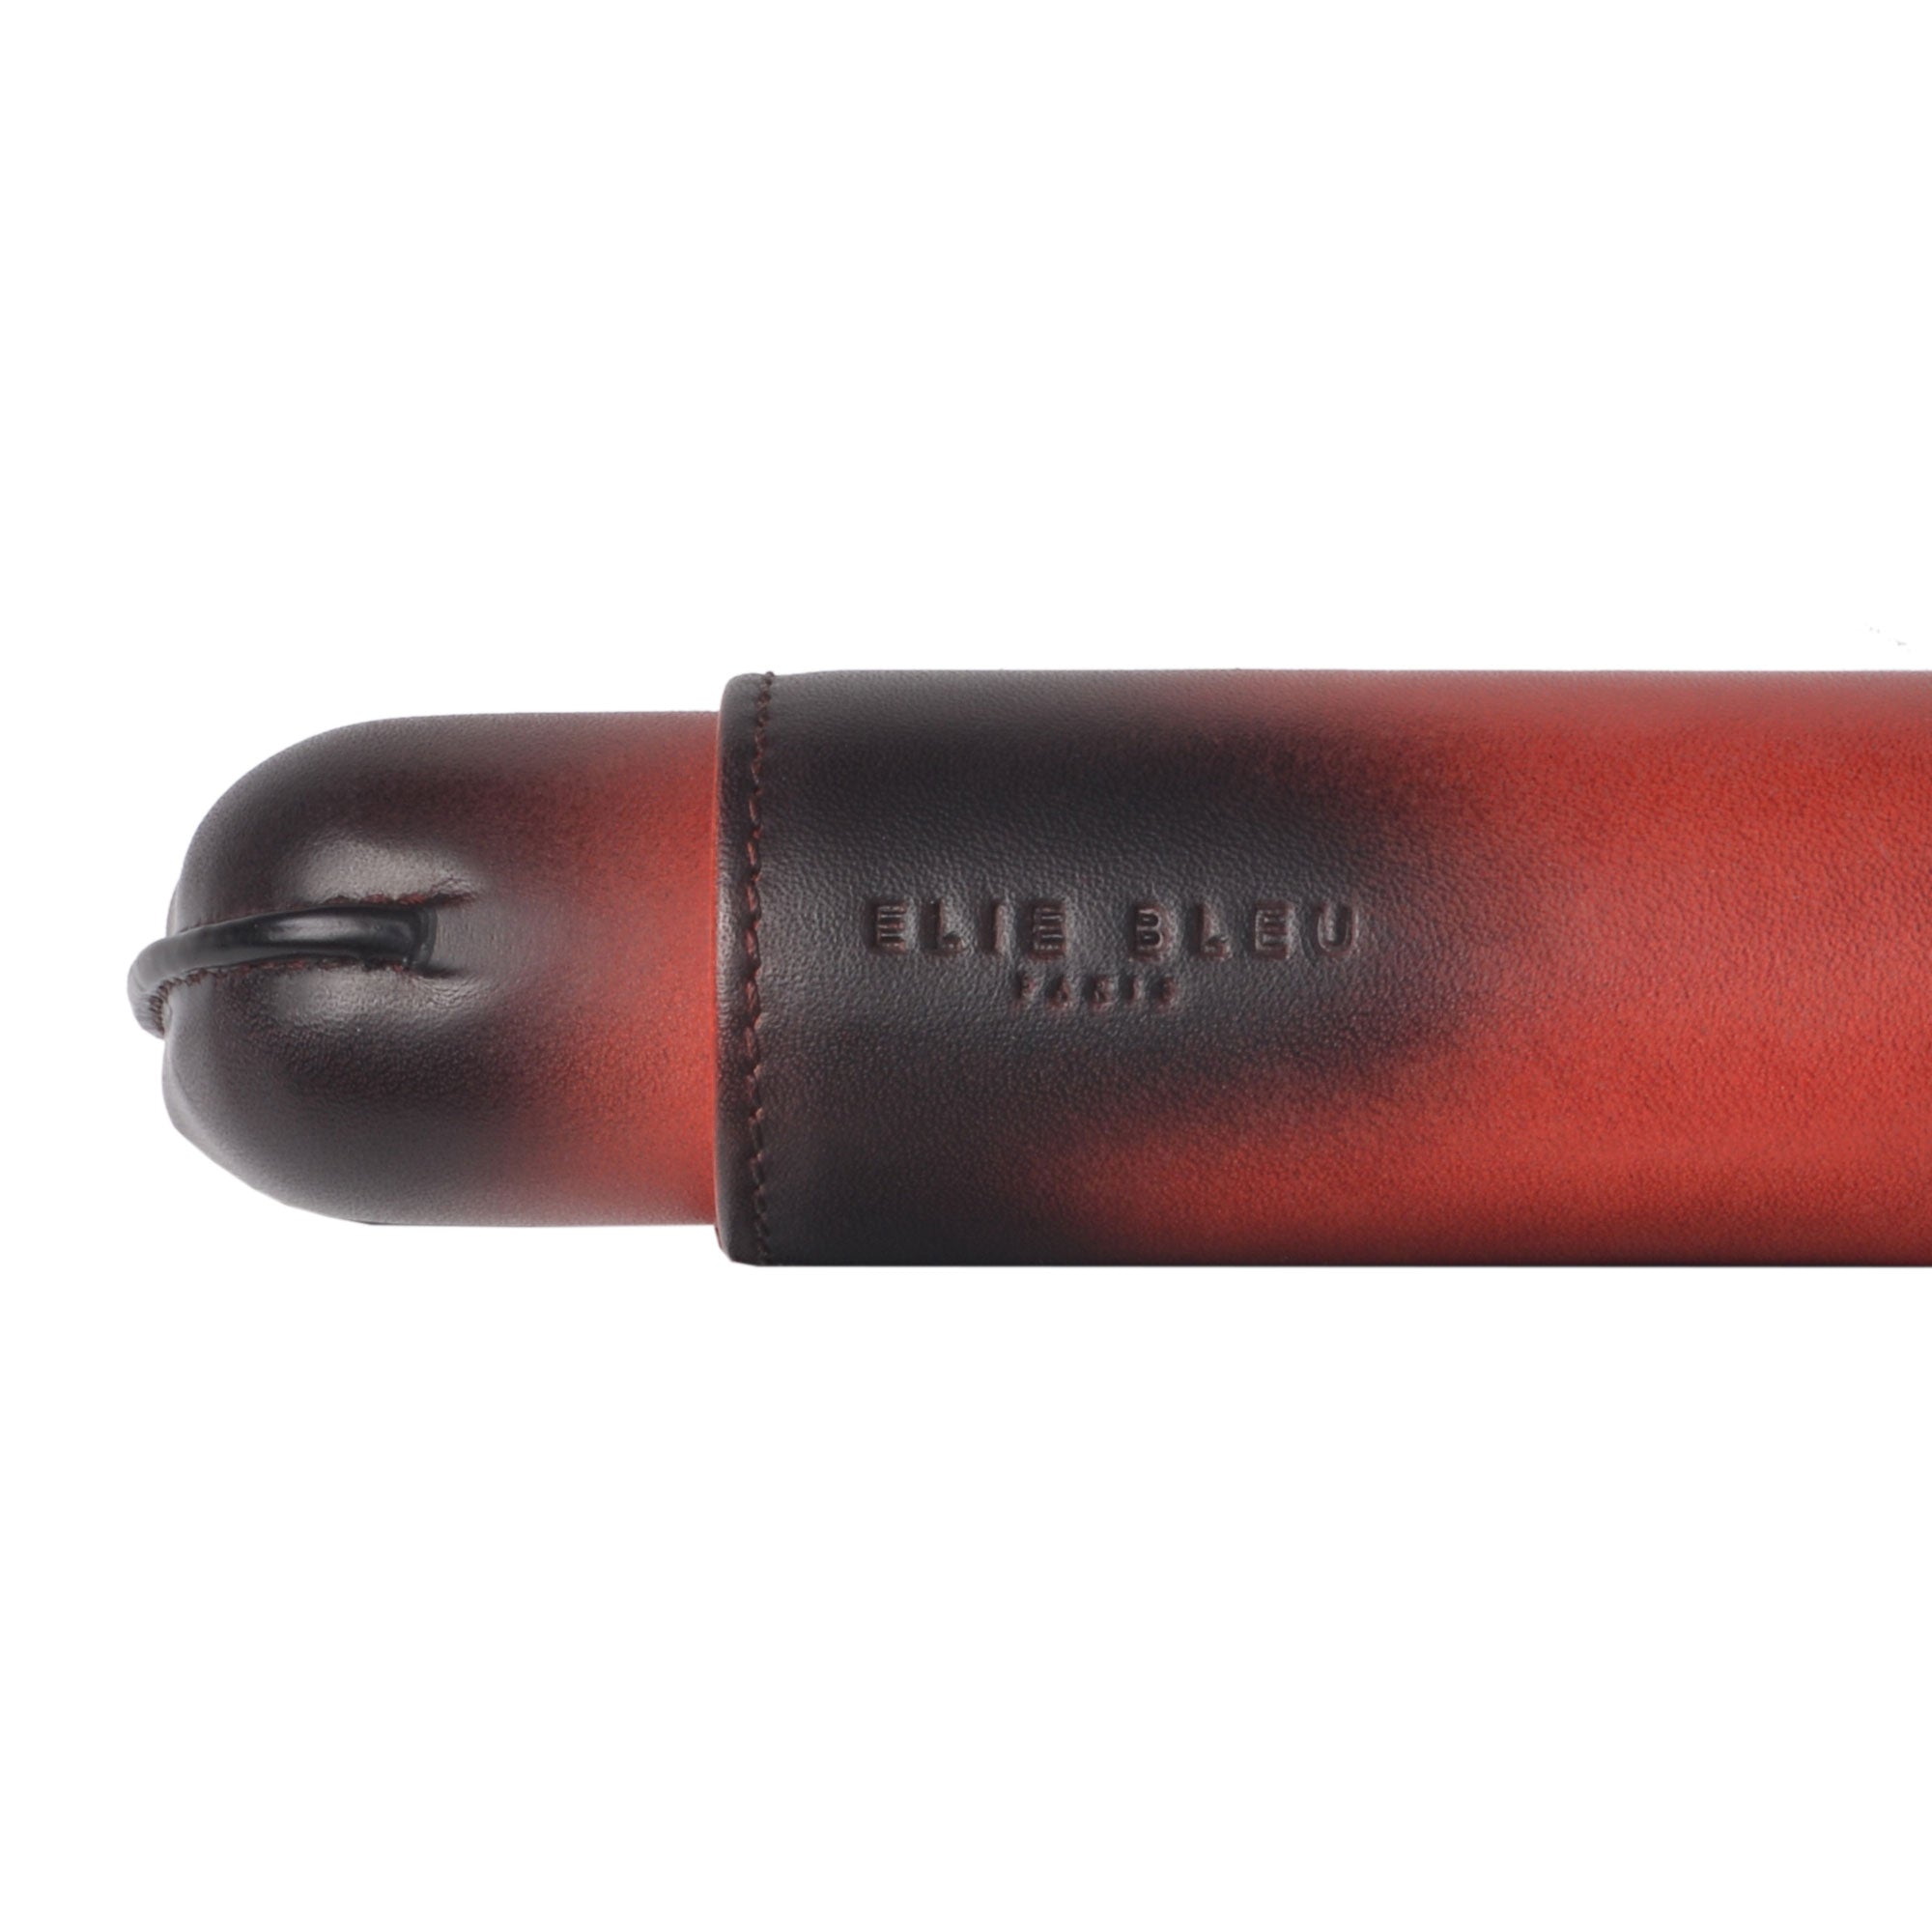 Cigar Case Patina Leather - 2 Cigars caliber 27